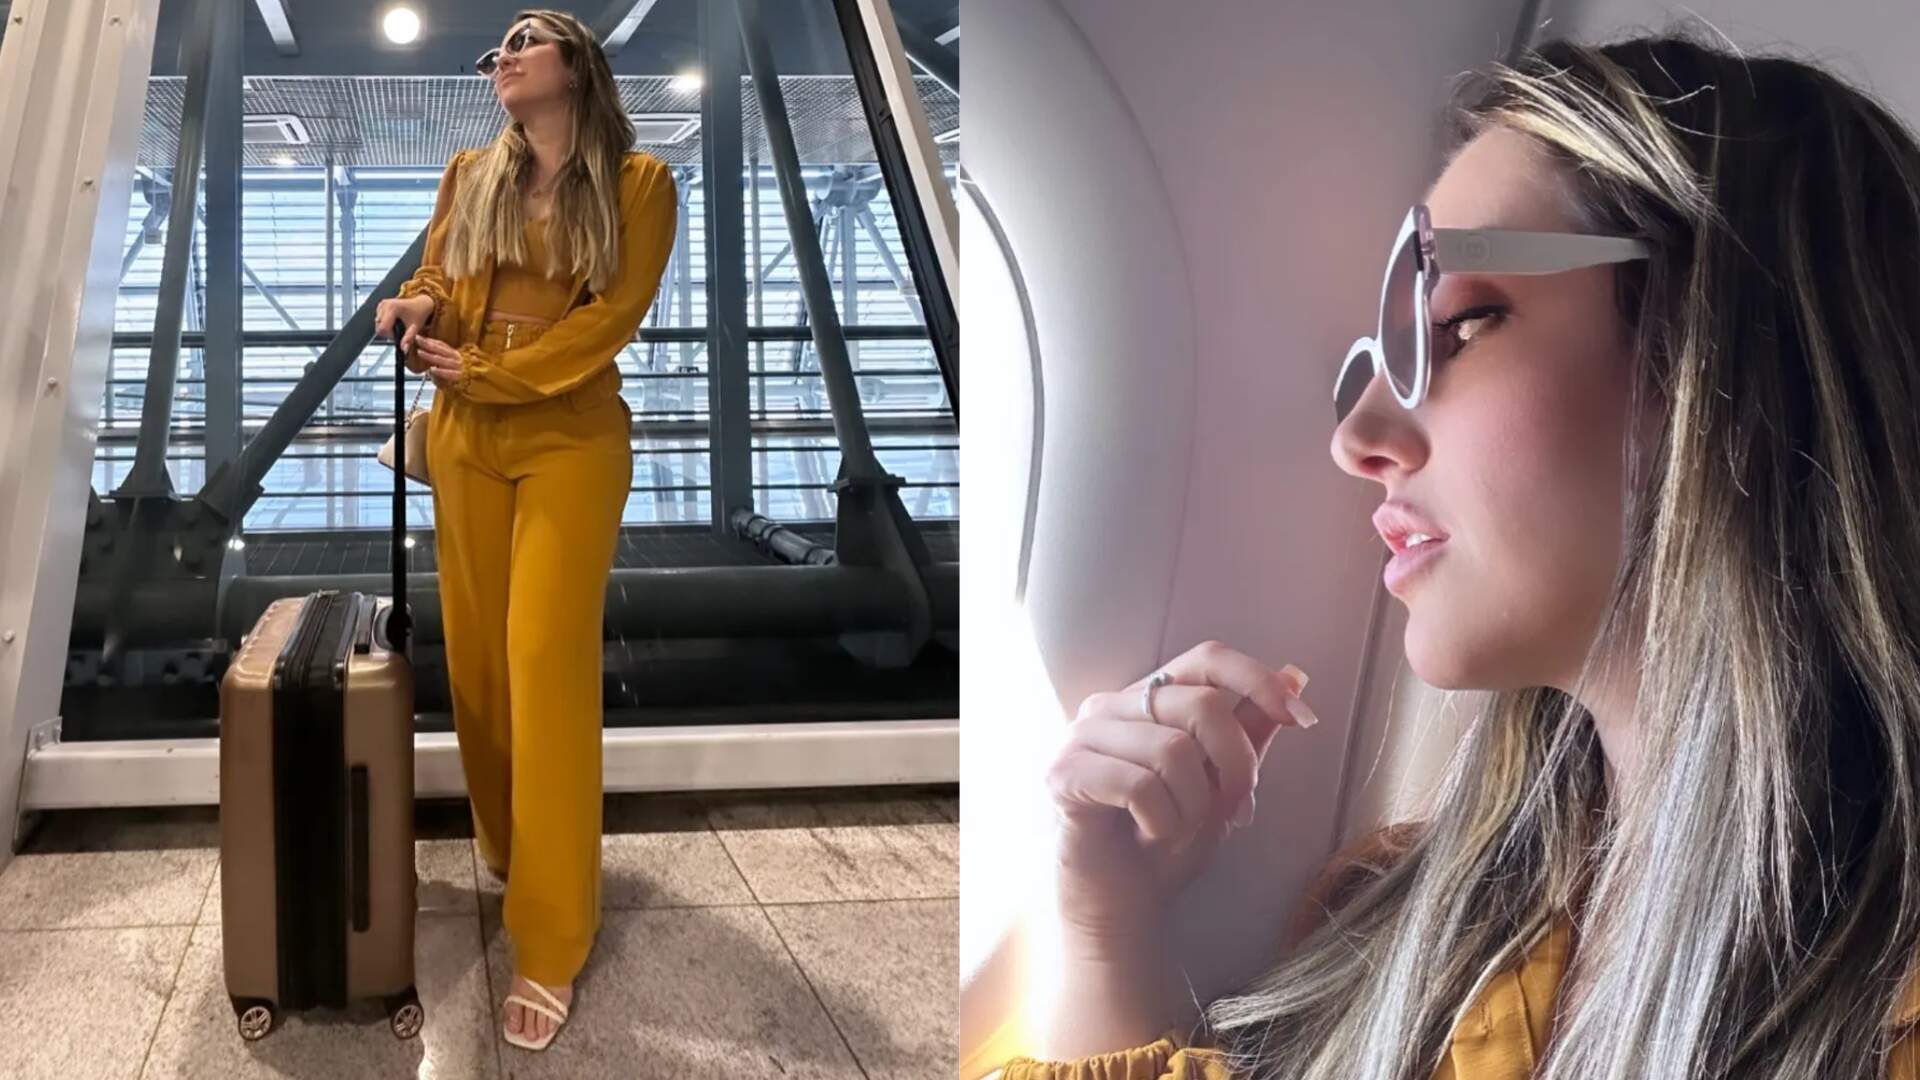 Que mico! Vencedora do BBB 23, Amanda Meirelles comete gafe no aeroporto e vira piada até entre os fãs - Metropolitana FM